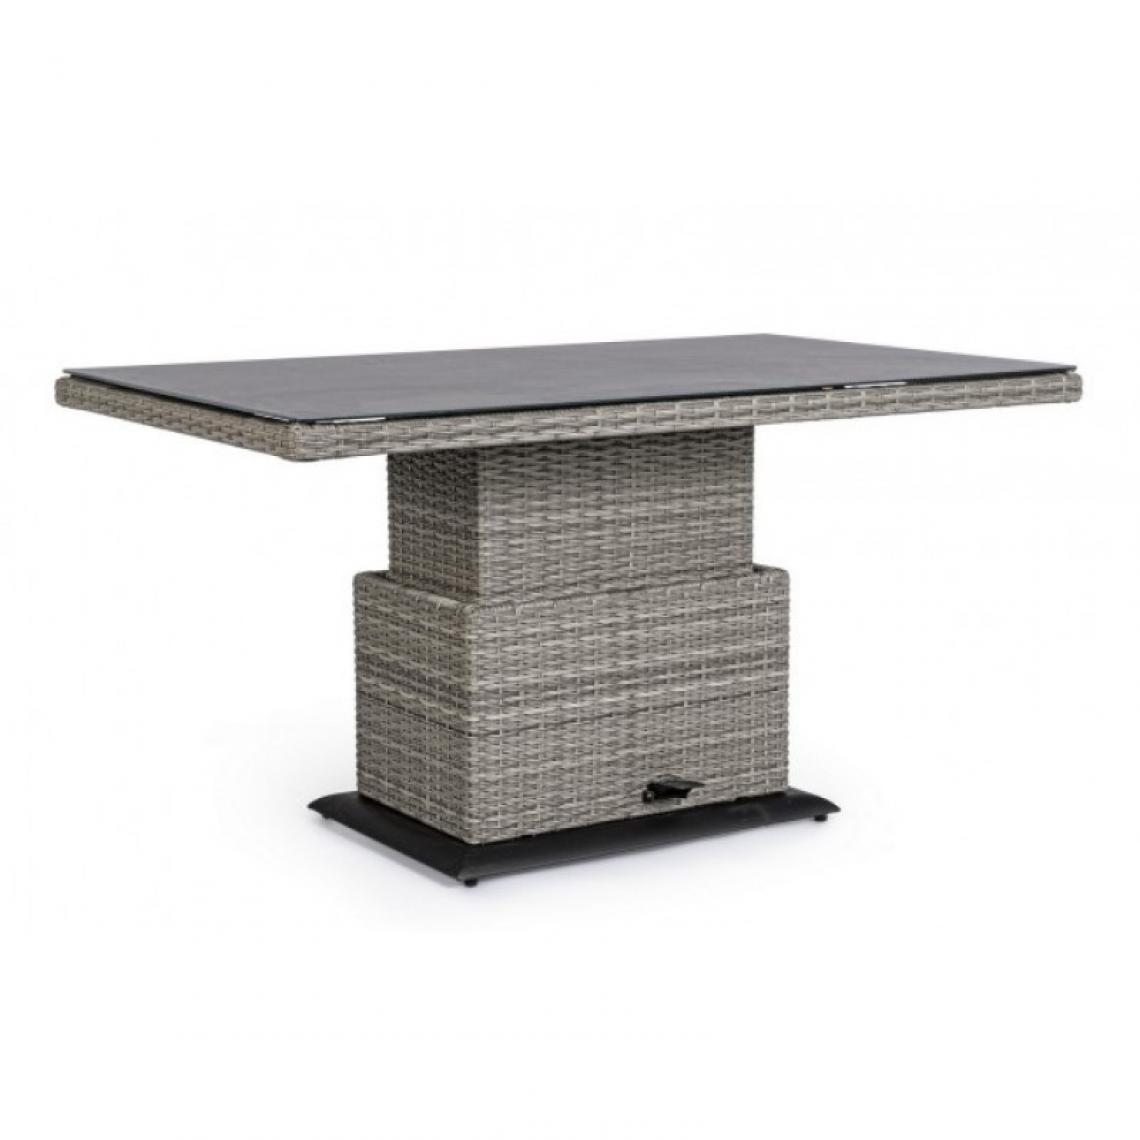 Webmarketpoint - Table grise Kent en fibre synthétique avec plateau en céramique - Tables de jardin